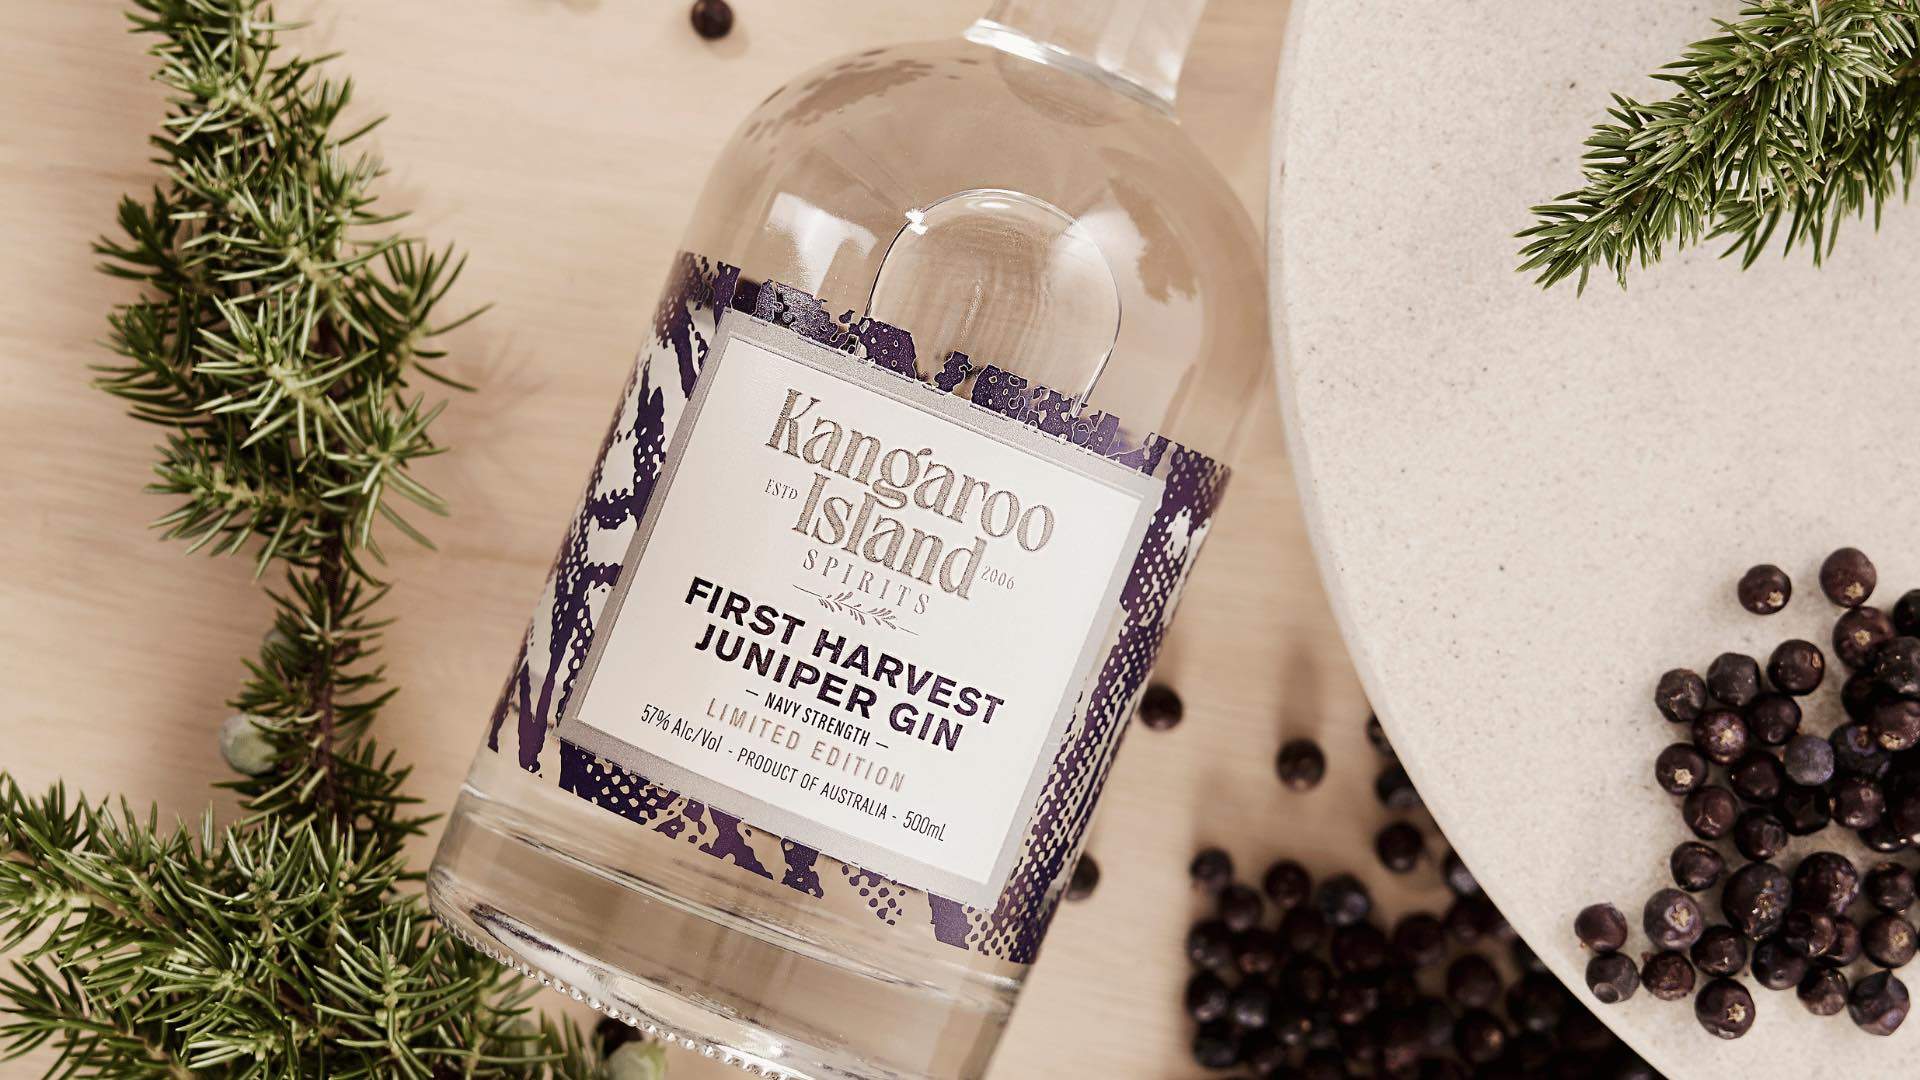 A bottle of Kangaroo Island Spirits' First Harvest Juniper Gin.